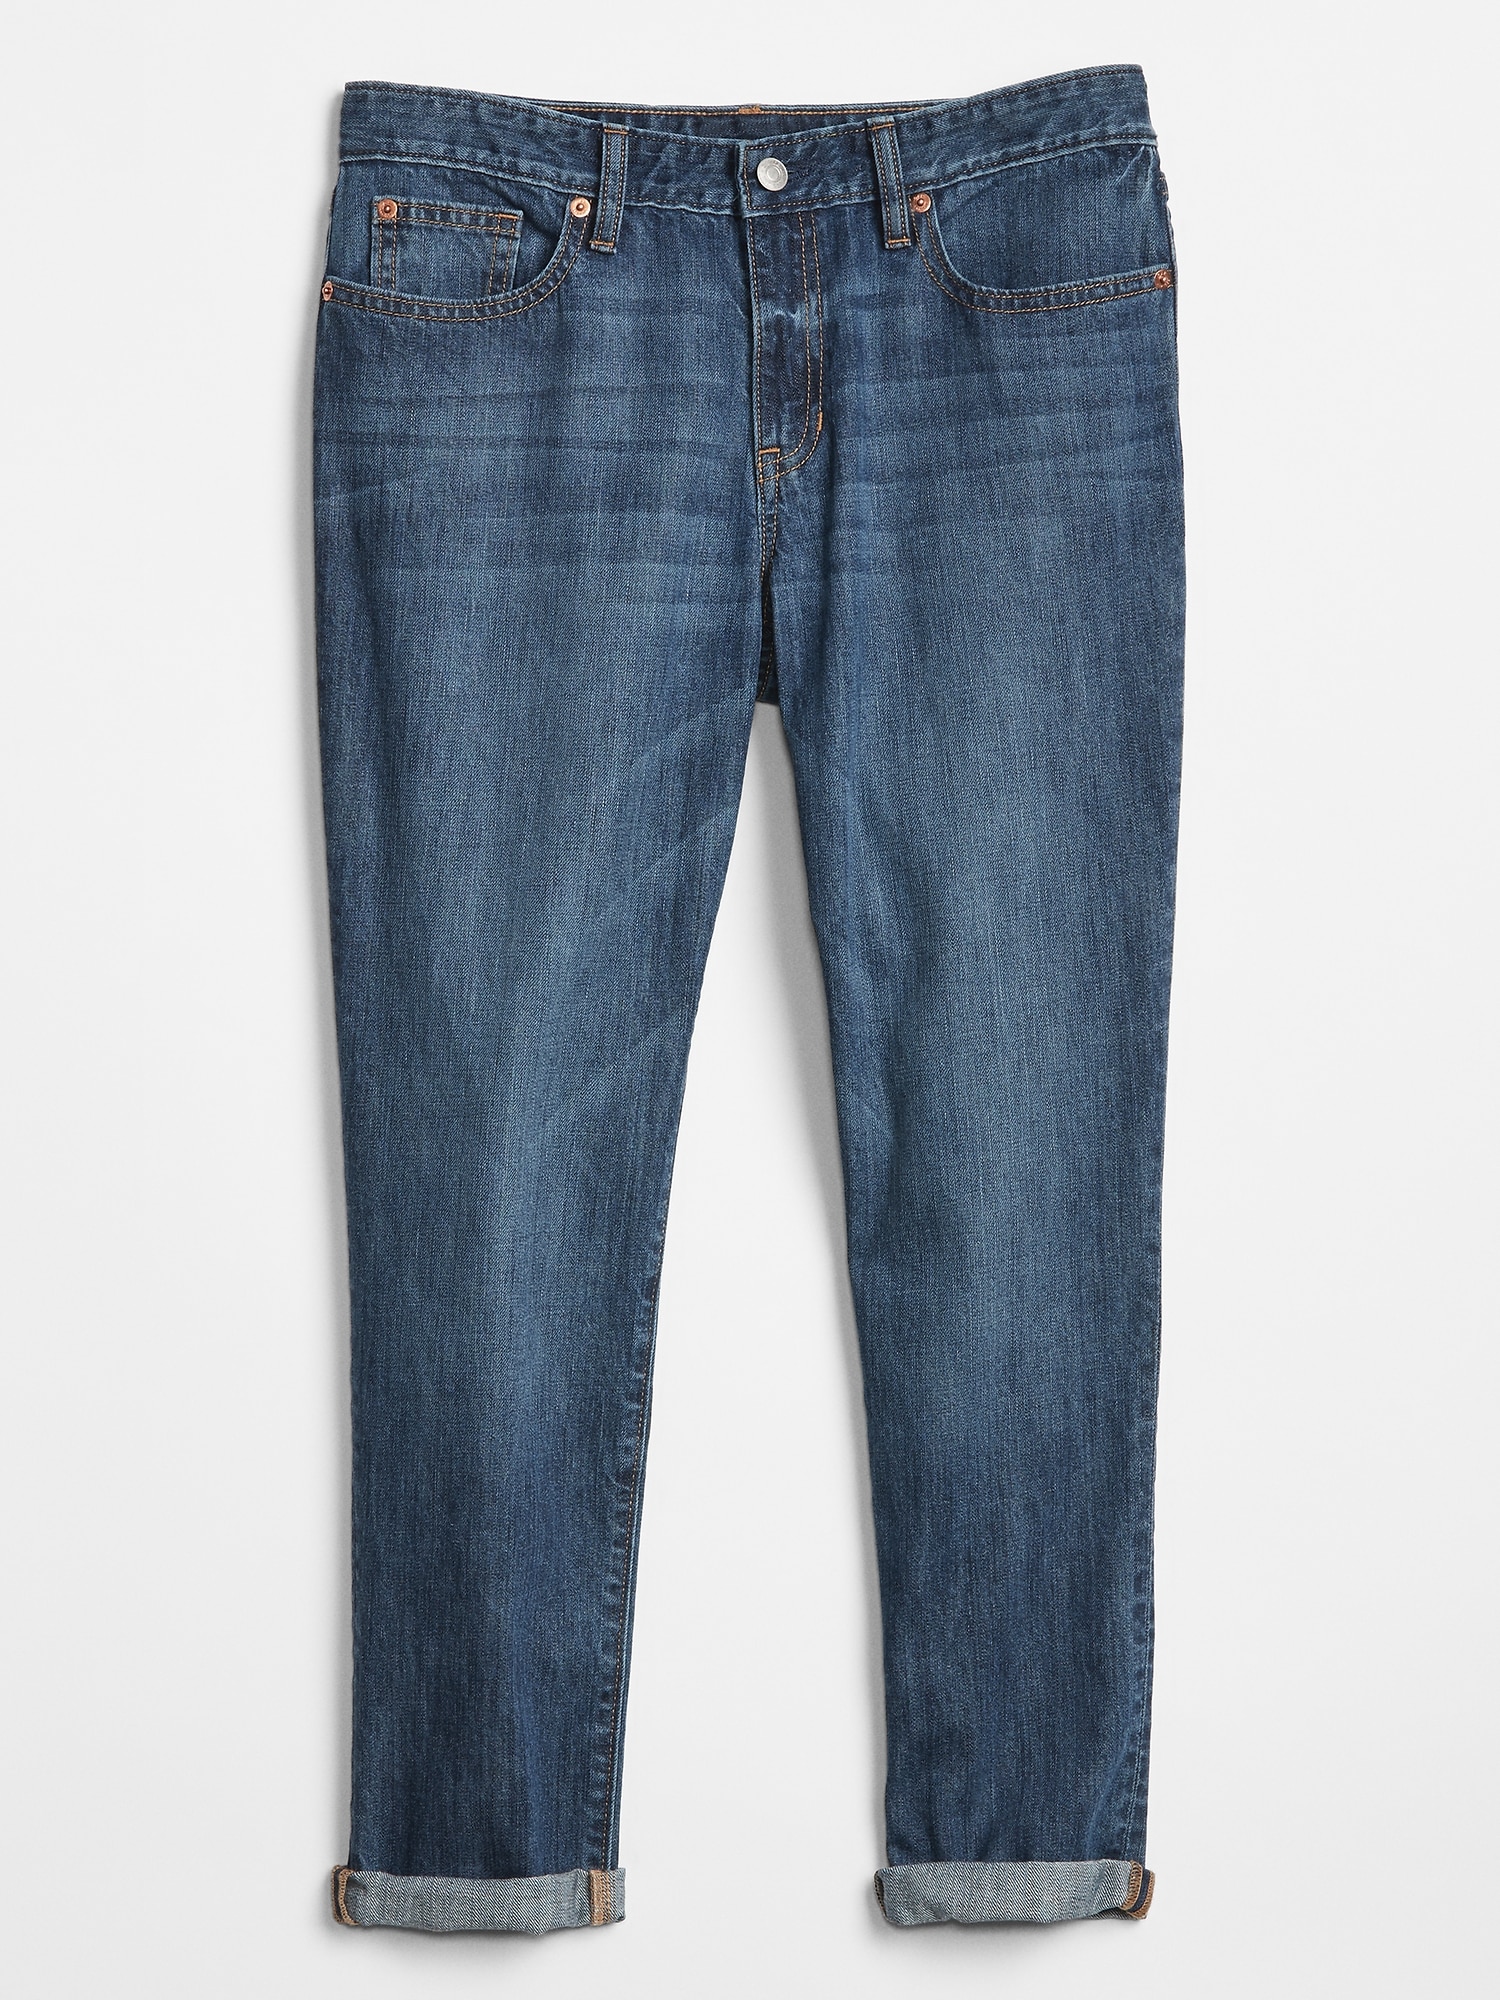 gap factory boyfriend jeans